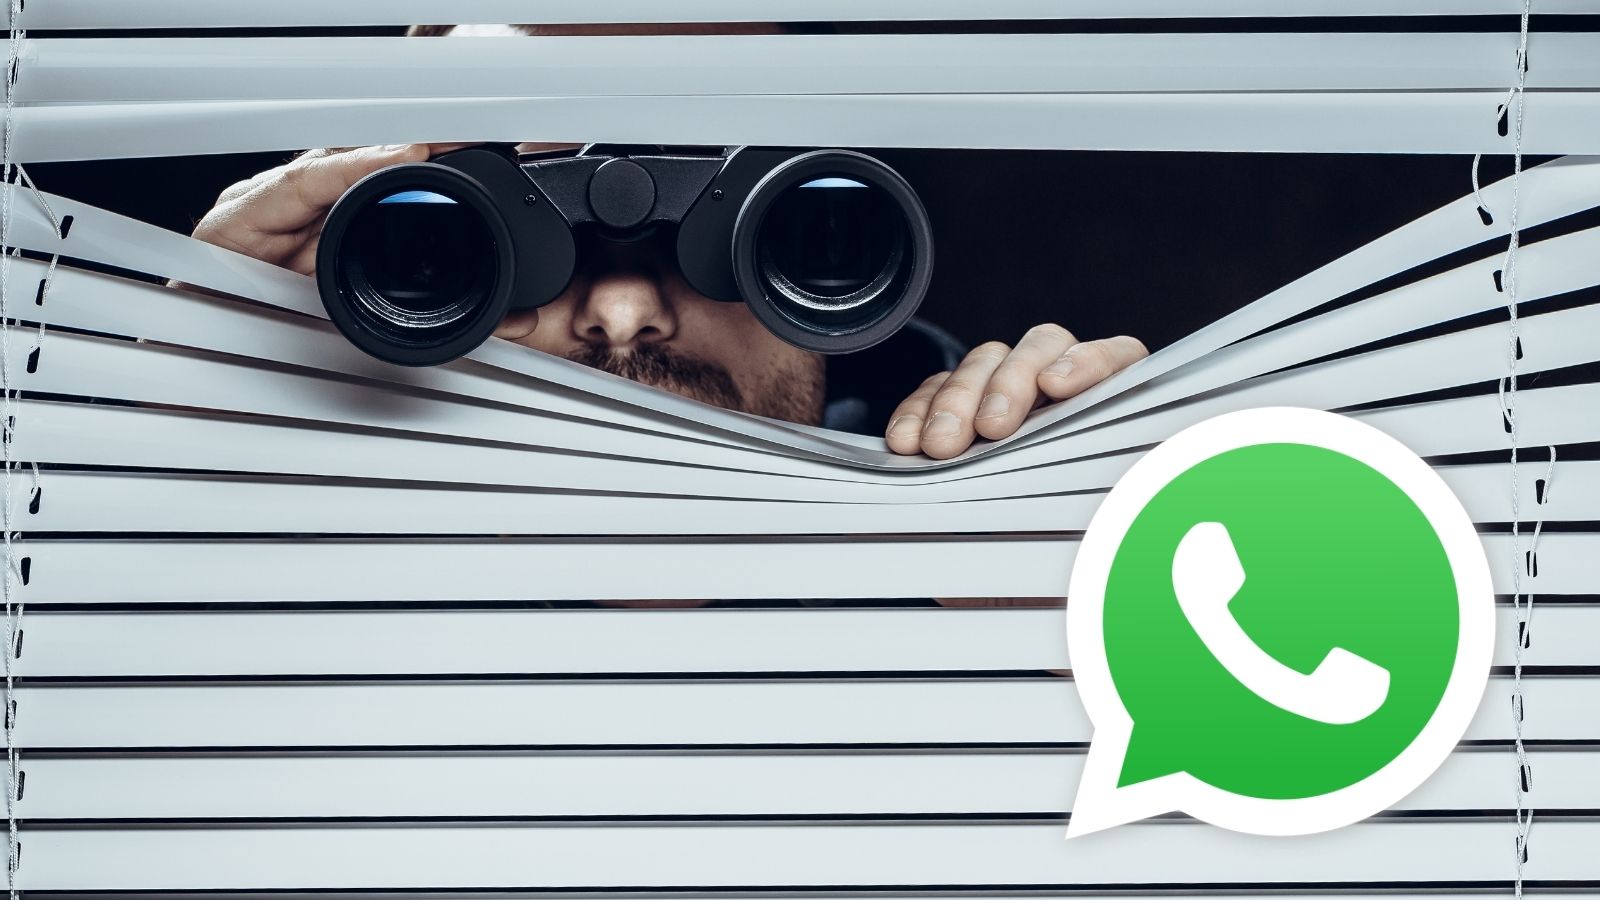 Come spiare e come non farsi spiare su WhatsApp: ecco i trucchi